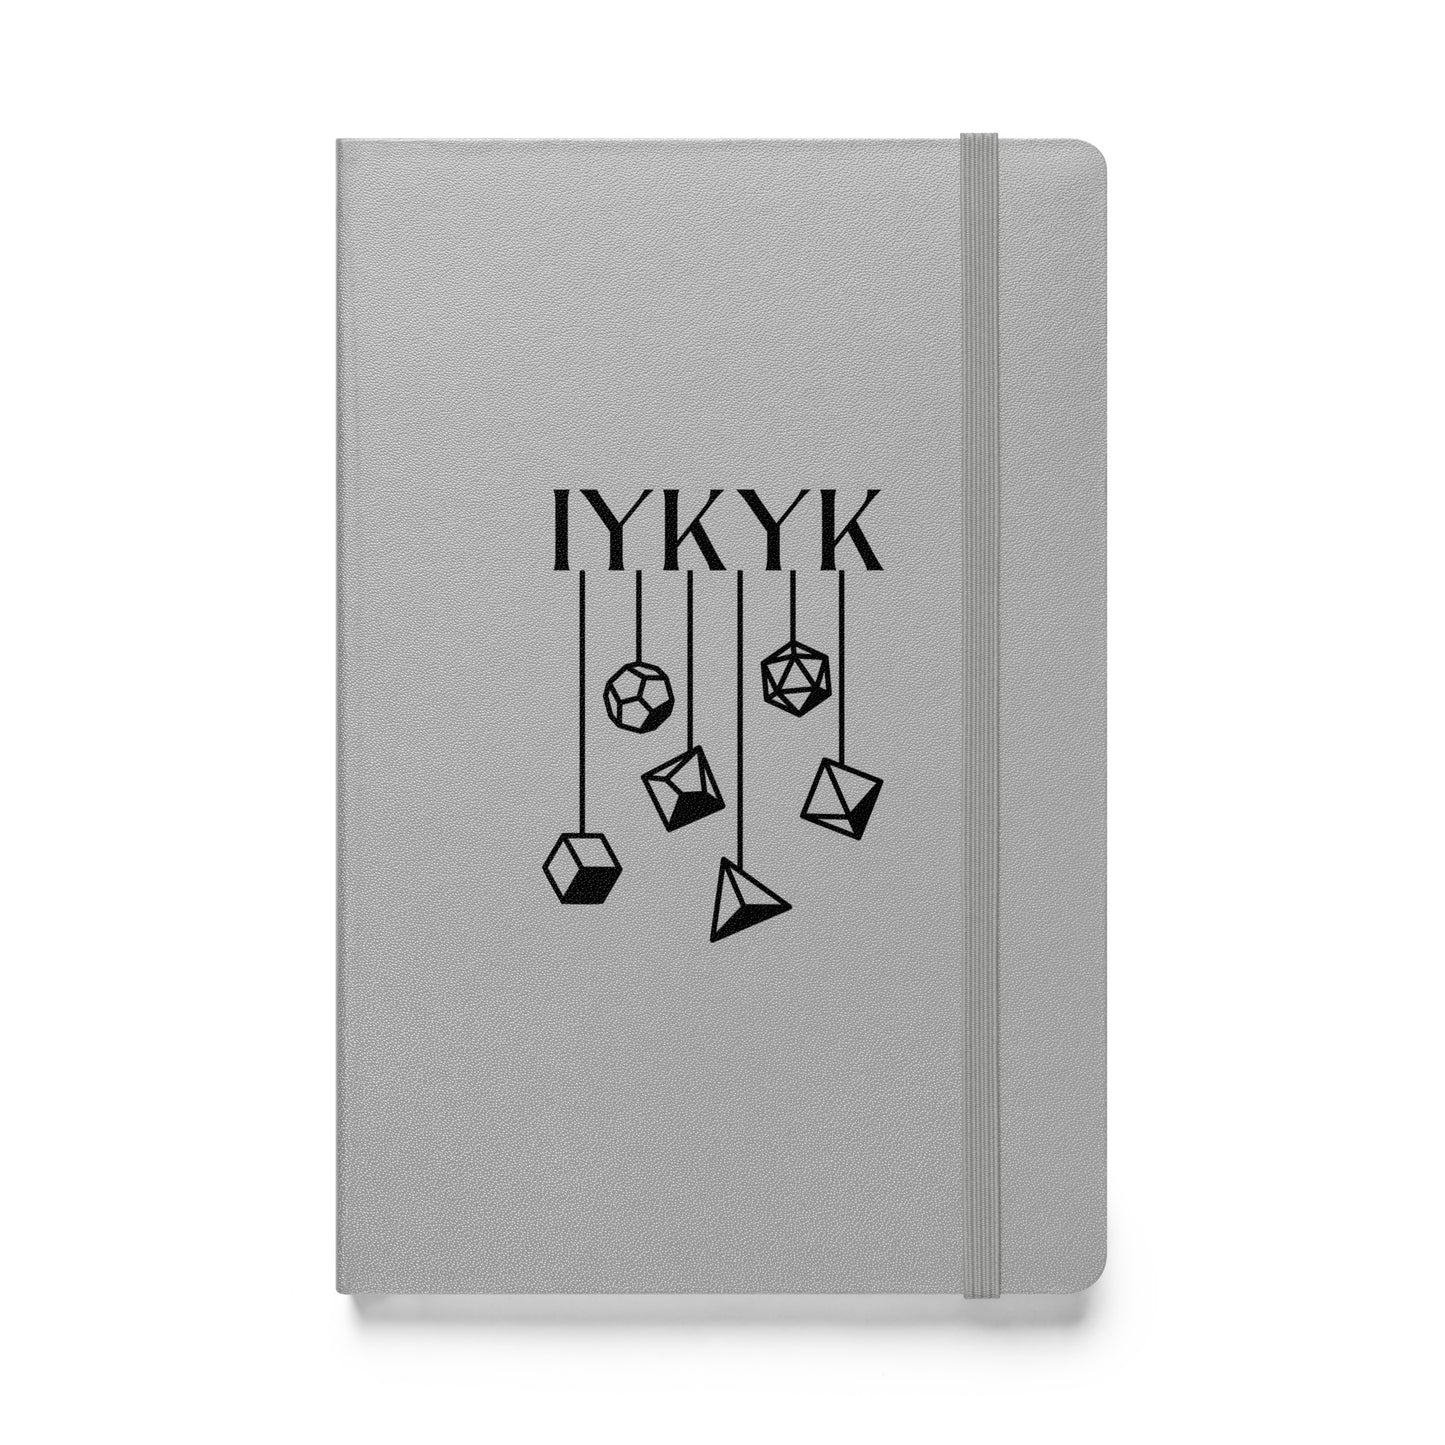 TTRPG Hardcover bound notebook